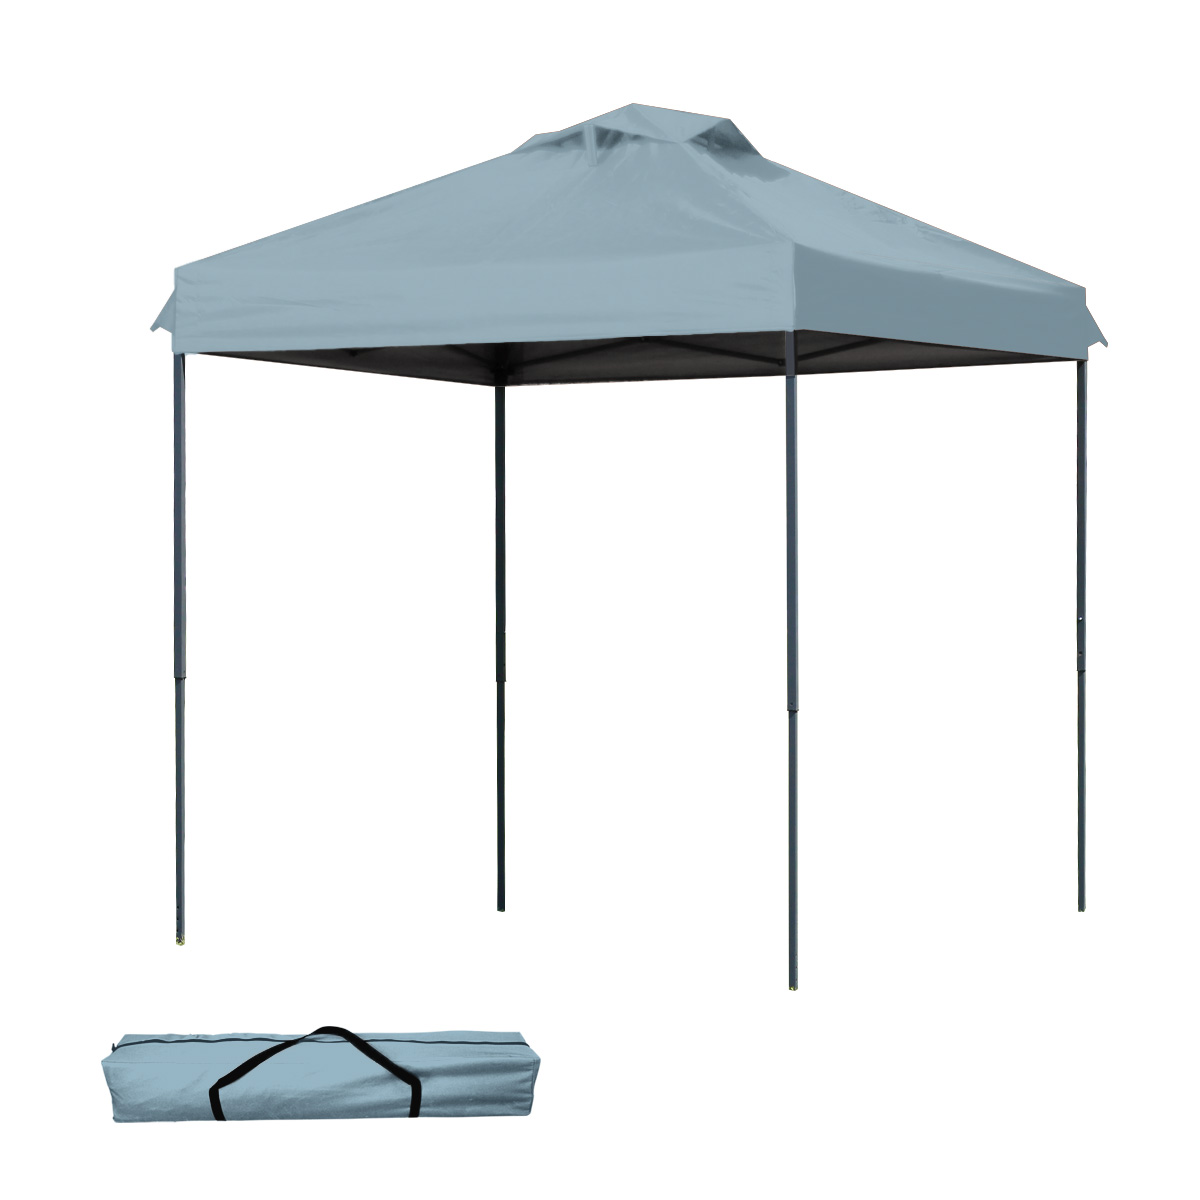 タープテント 2m×2m ワンタッチ サンシェード スチール 日よけ ベンチレーション付き 通気性抜群 紫外線防止 UVカット 撥水加工 MERMONT